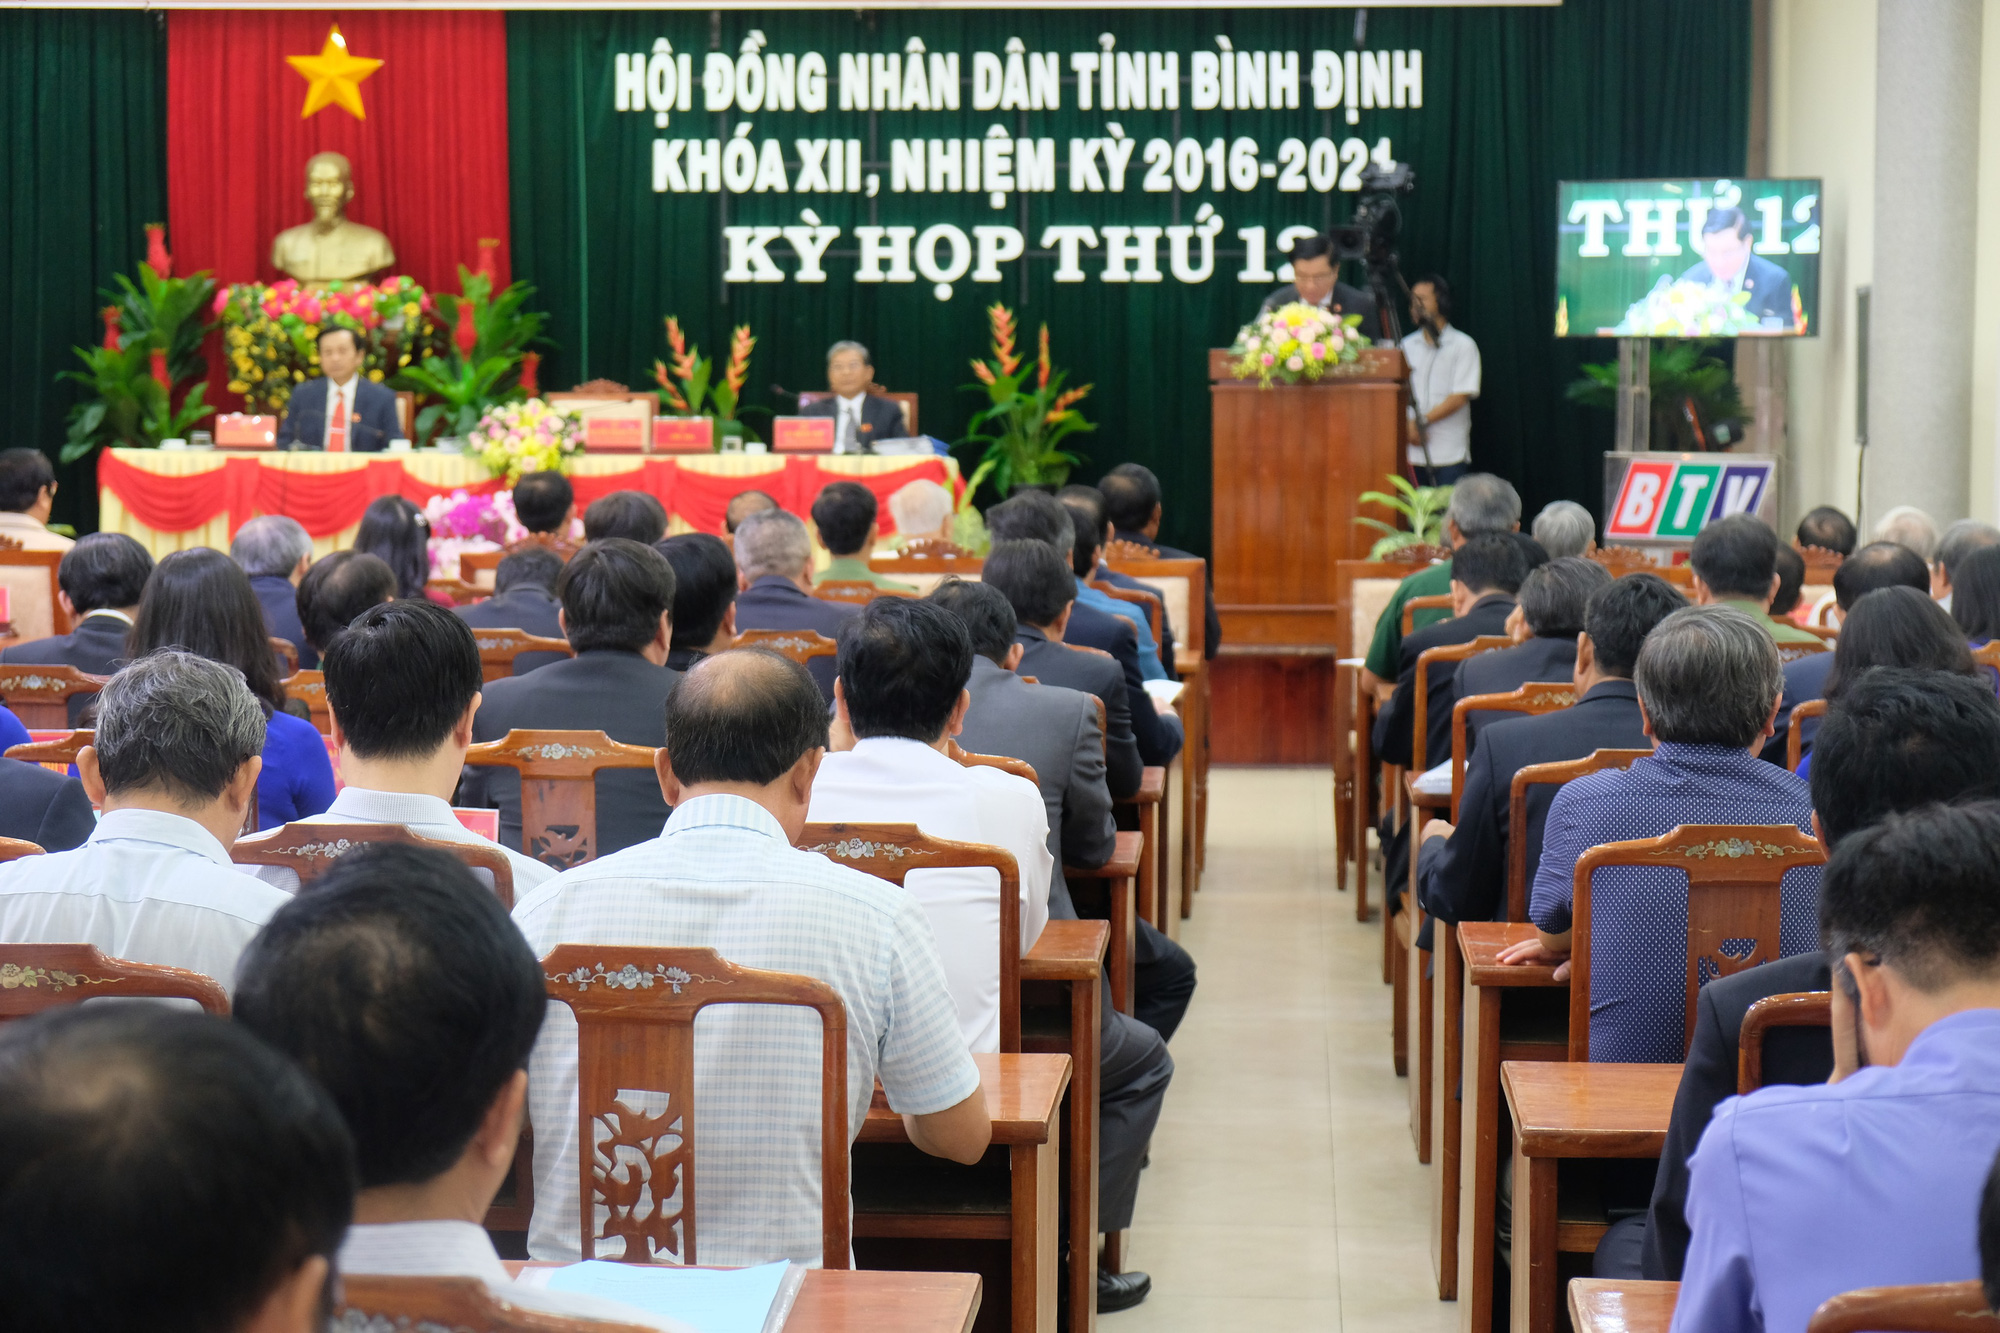 Bình Định họp Hội đồng Nhân dân… nhưng không tổ chức chất vấn trực tiếp lãnh đạo - Ảnh 1.